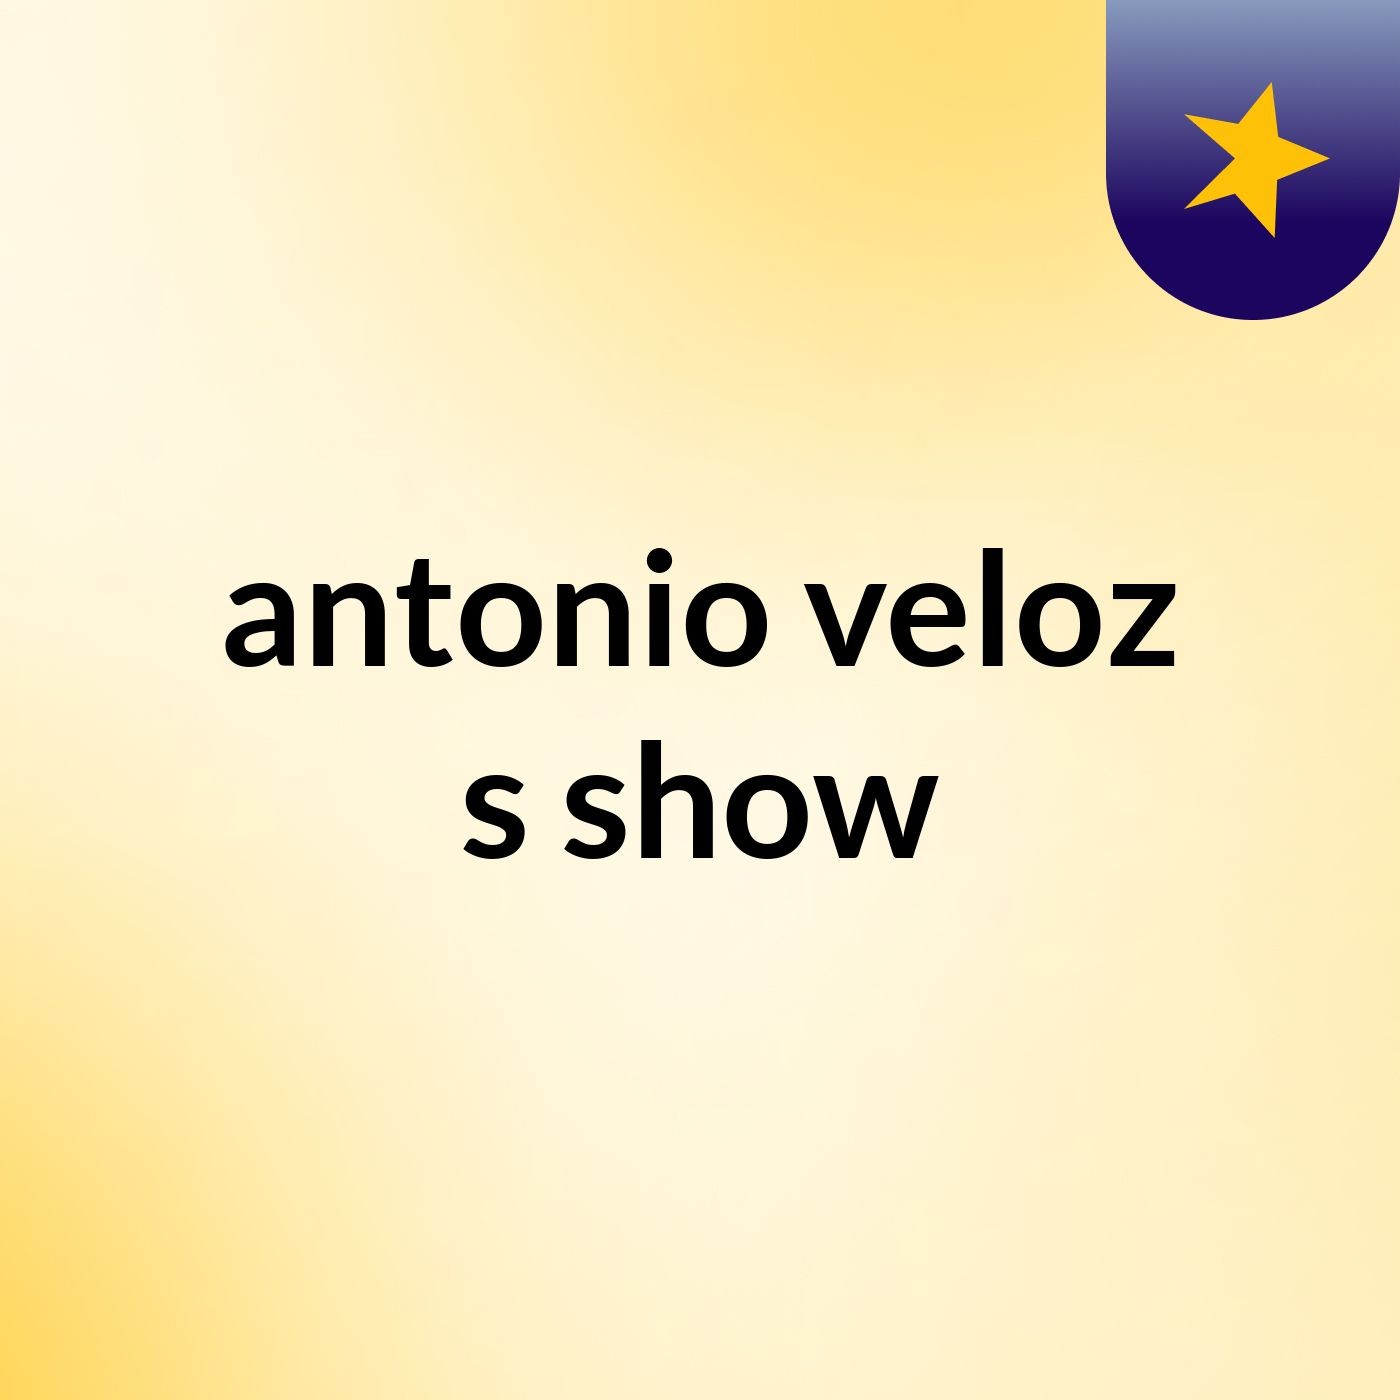 antonio veloz's show